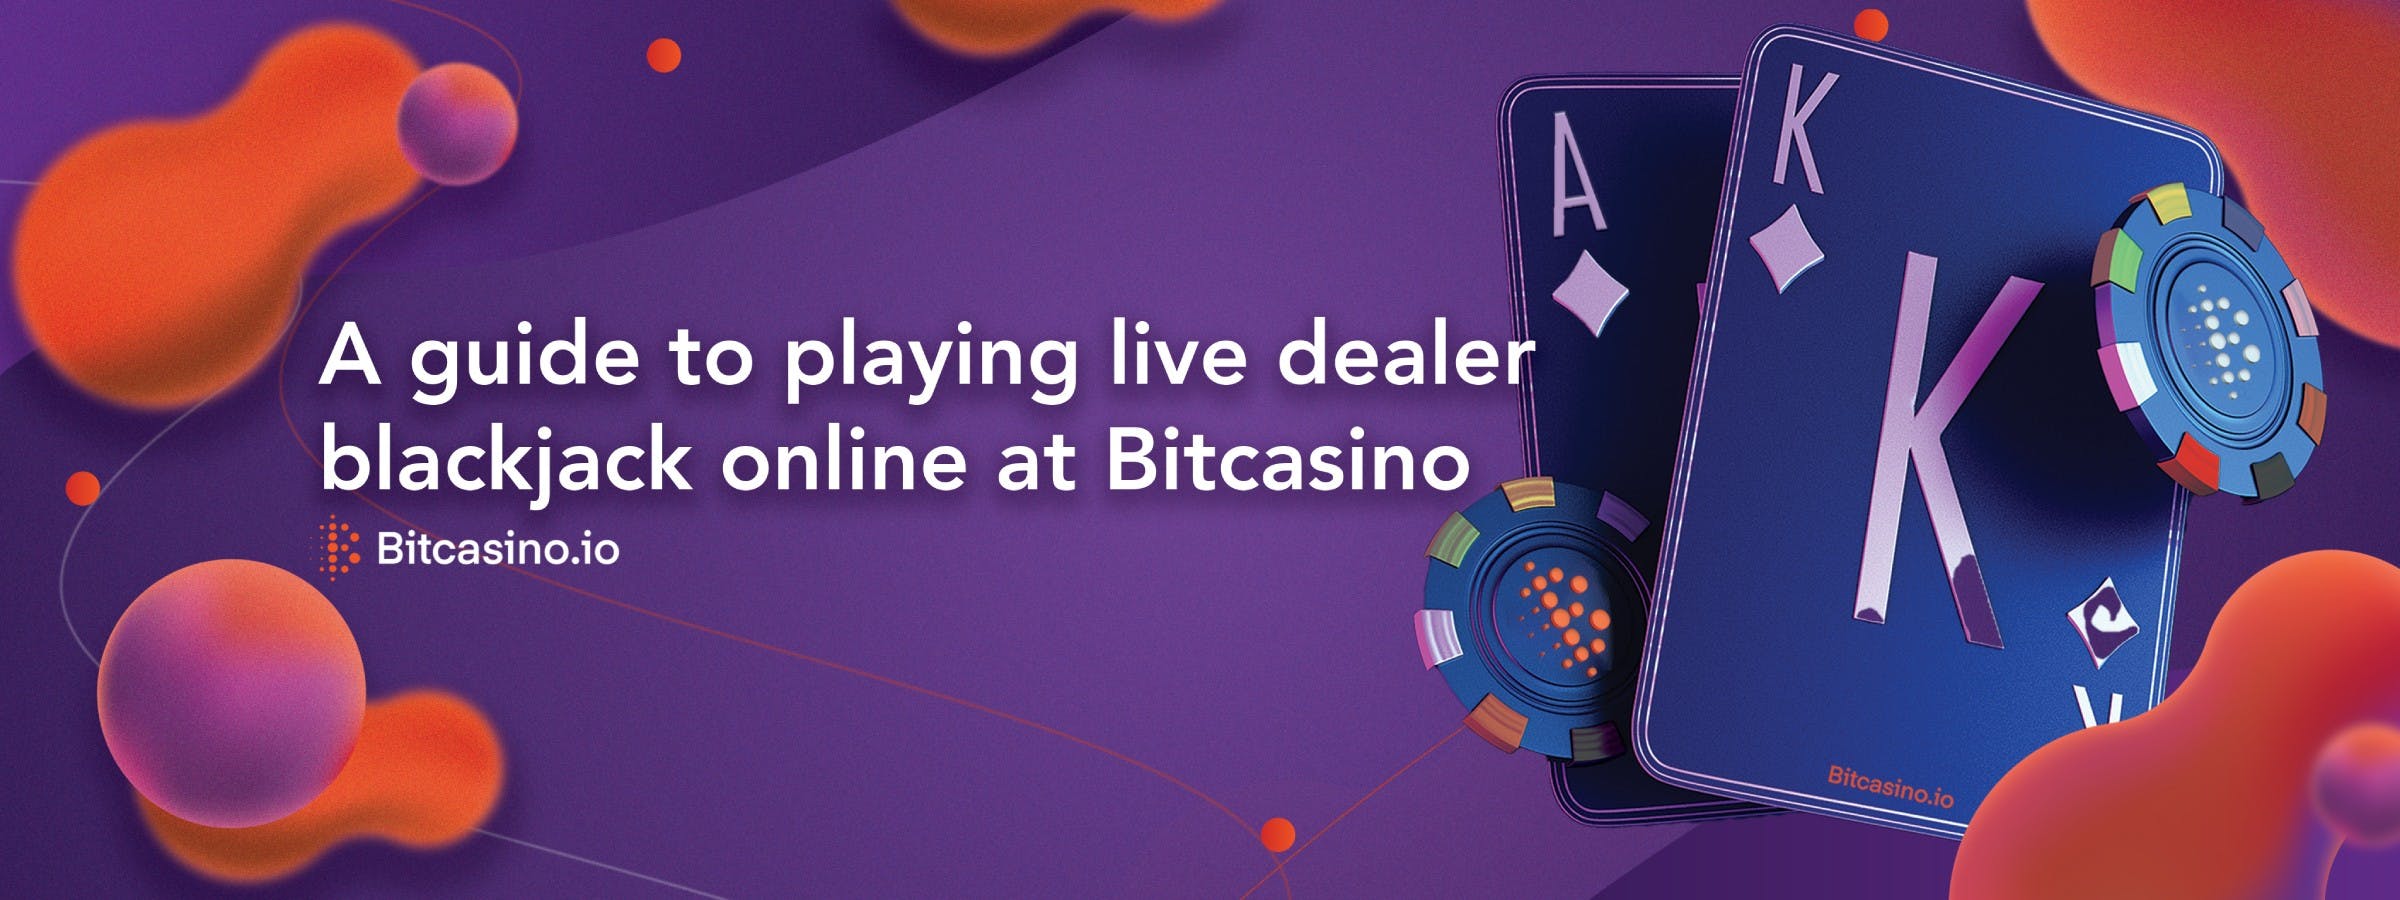 Hướng dẫn chơi blackjack người chia bài trực tiếp trực tuyến tại Bitcasino